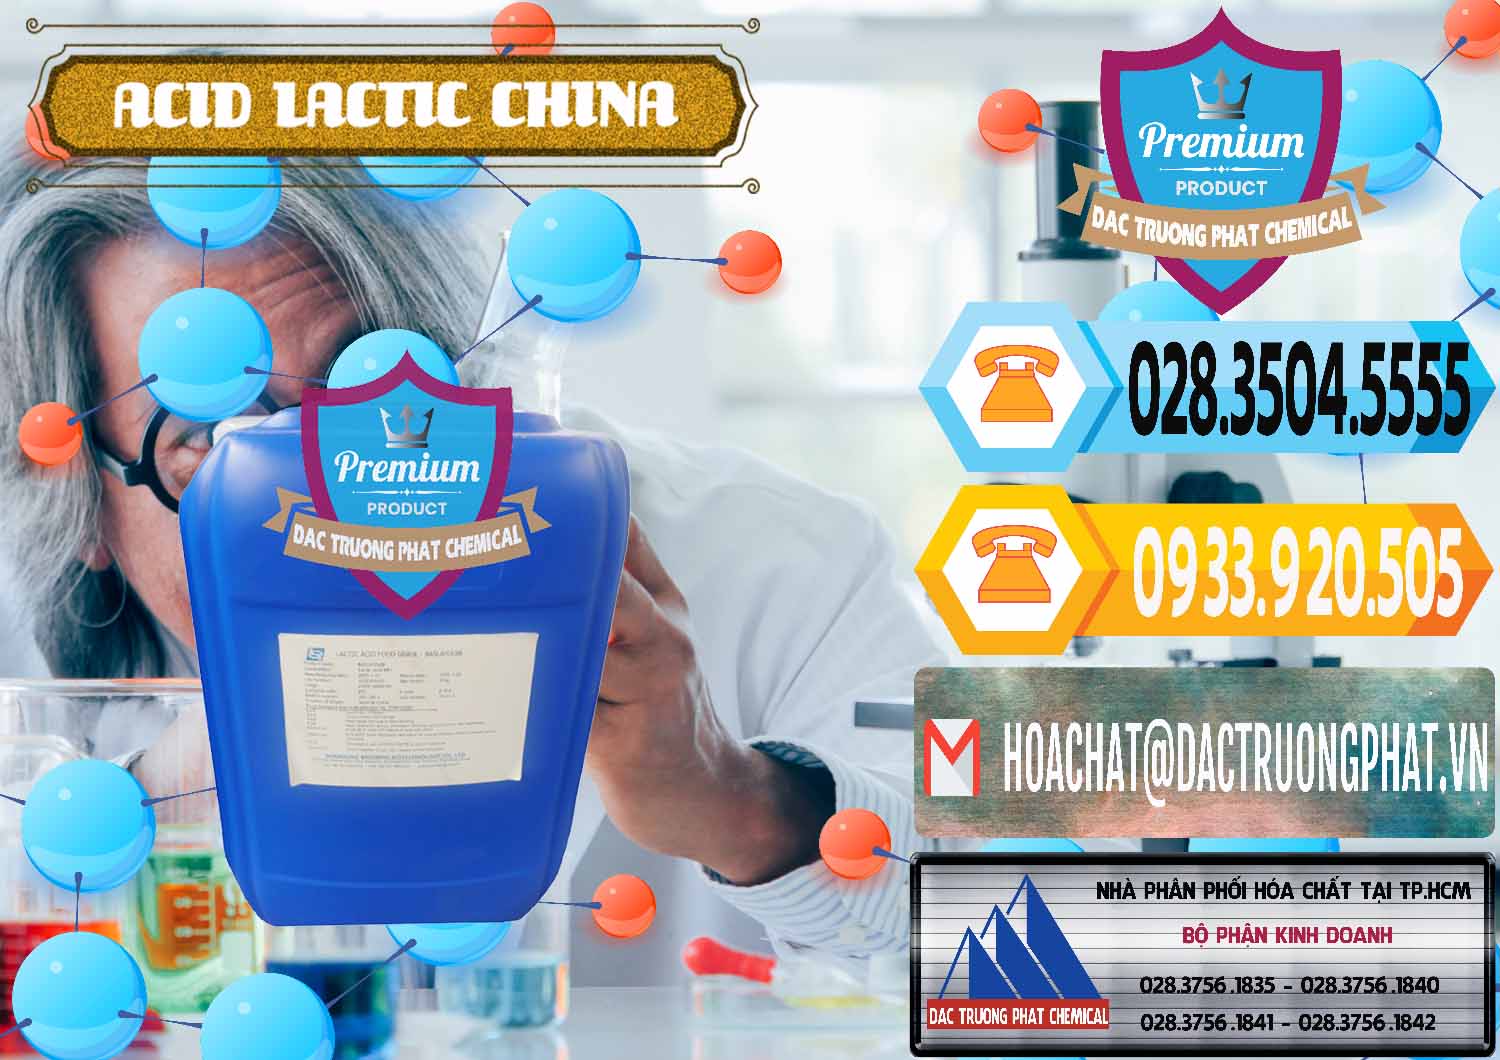 Công ty chuyên kinh doanh - bán Acid Lactic – Axit Lactic Trung Quốc China - 0374 - Chuyên phân phối - cung cấp hóa chất tại TP.HCM - hoachattayrua.net